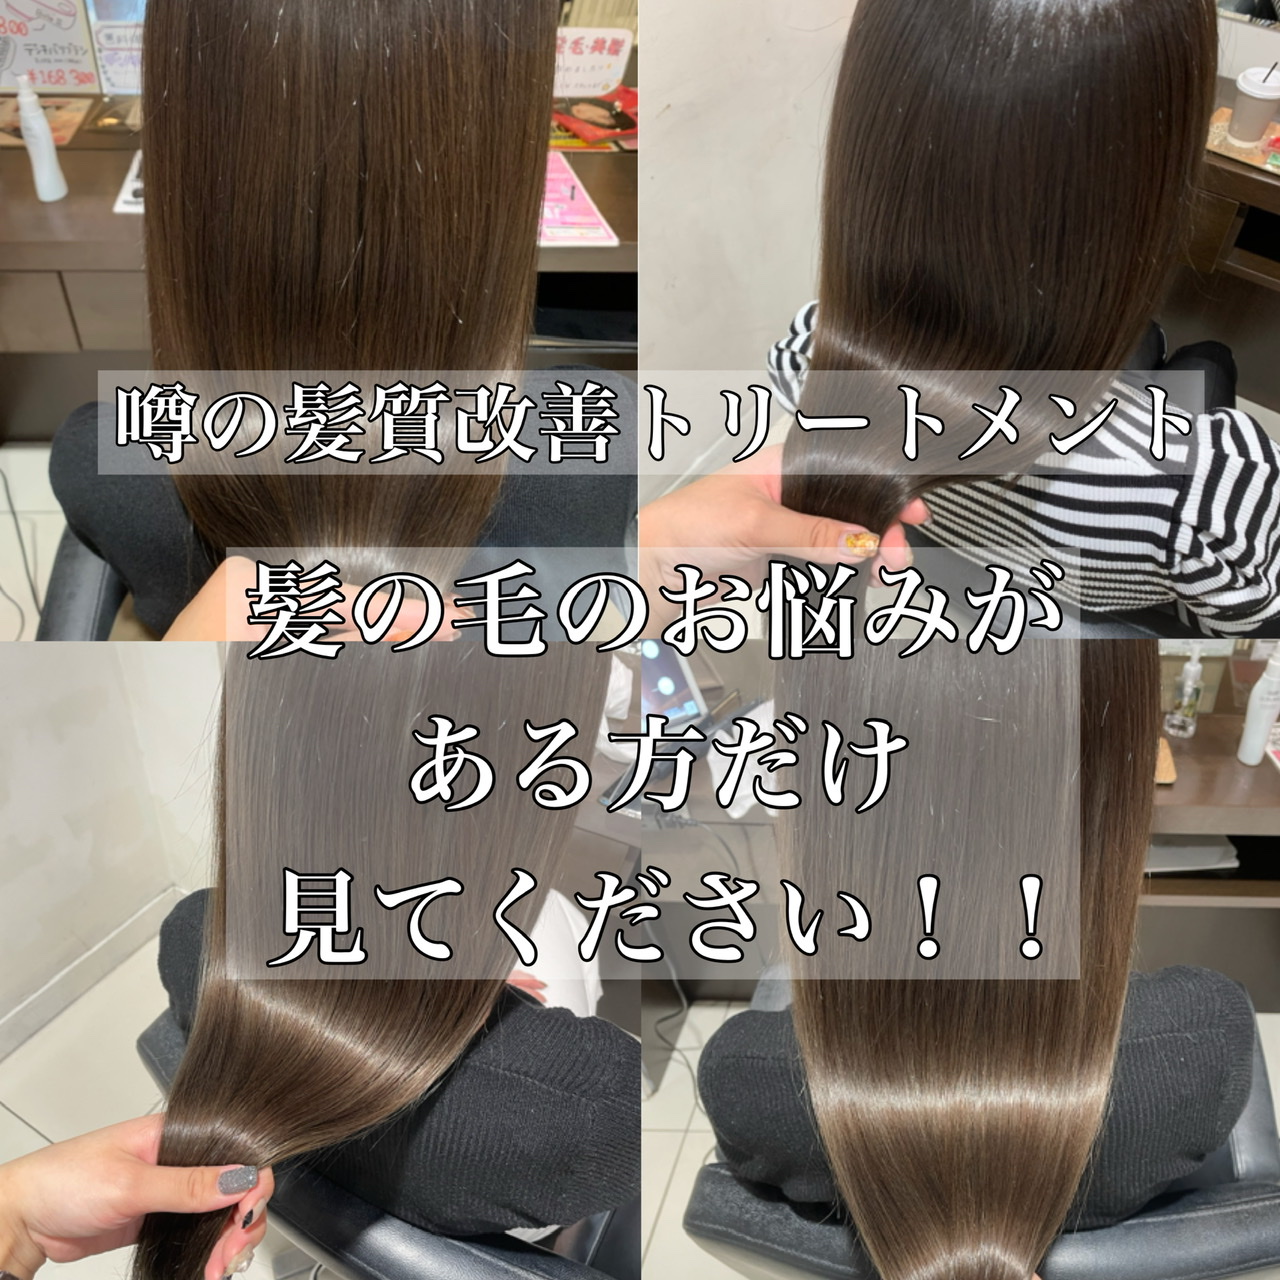 髪質改善トリートメント 髪の毛のお悩みがある方だけ見てください 奈良 京都 大阪の美容室 ハピネス